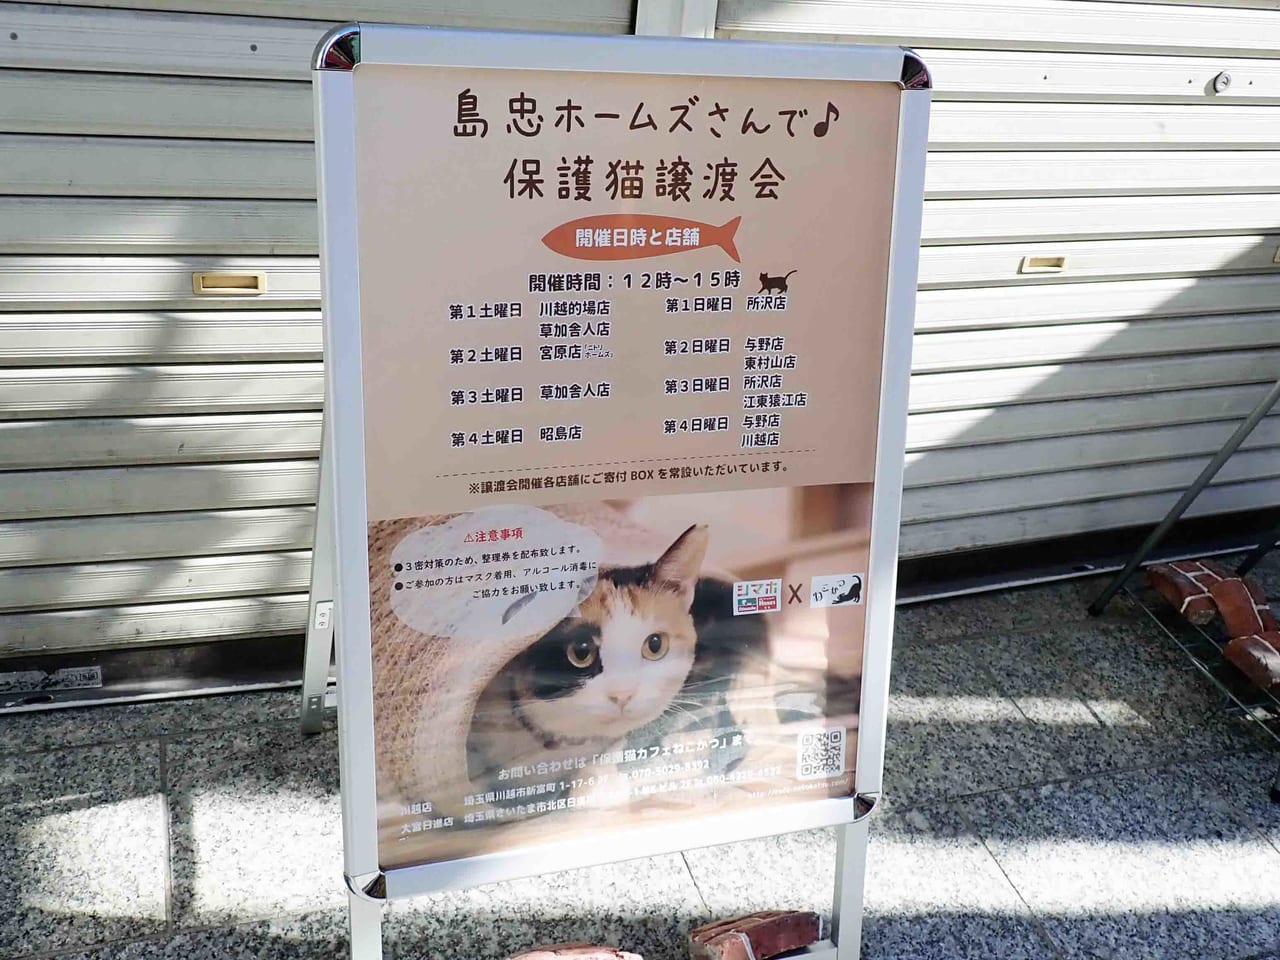 クレアモールで営業している『保護猫カフェねこかつ 川越店』